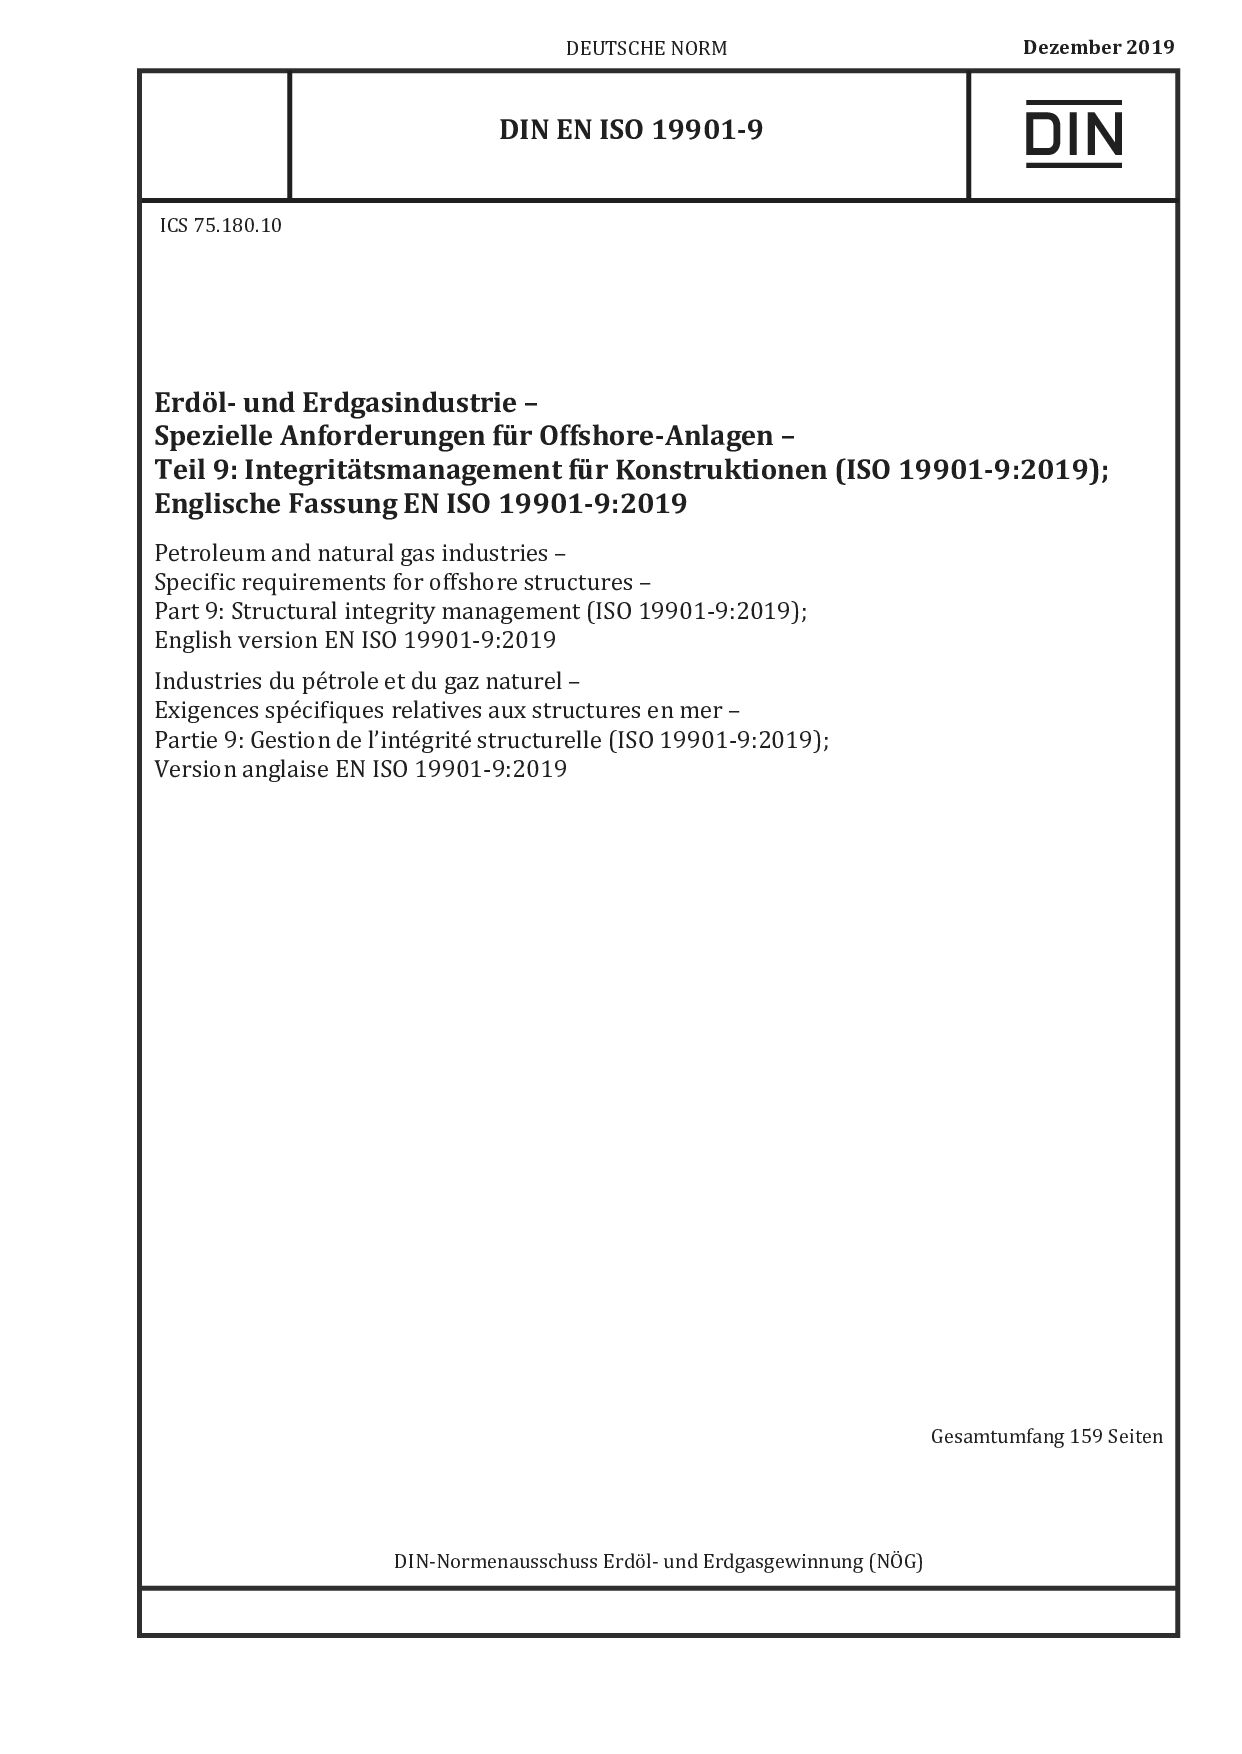 DIN EN ISO 19901-9:2019-12